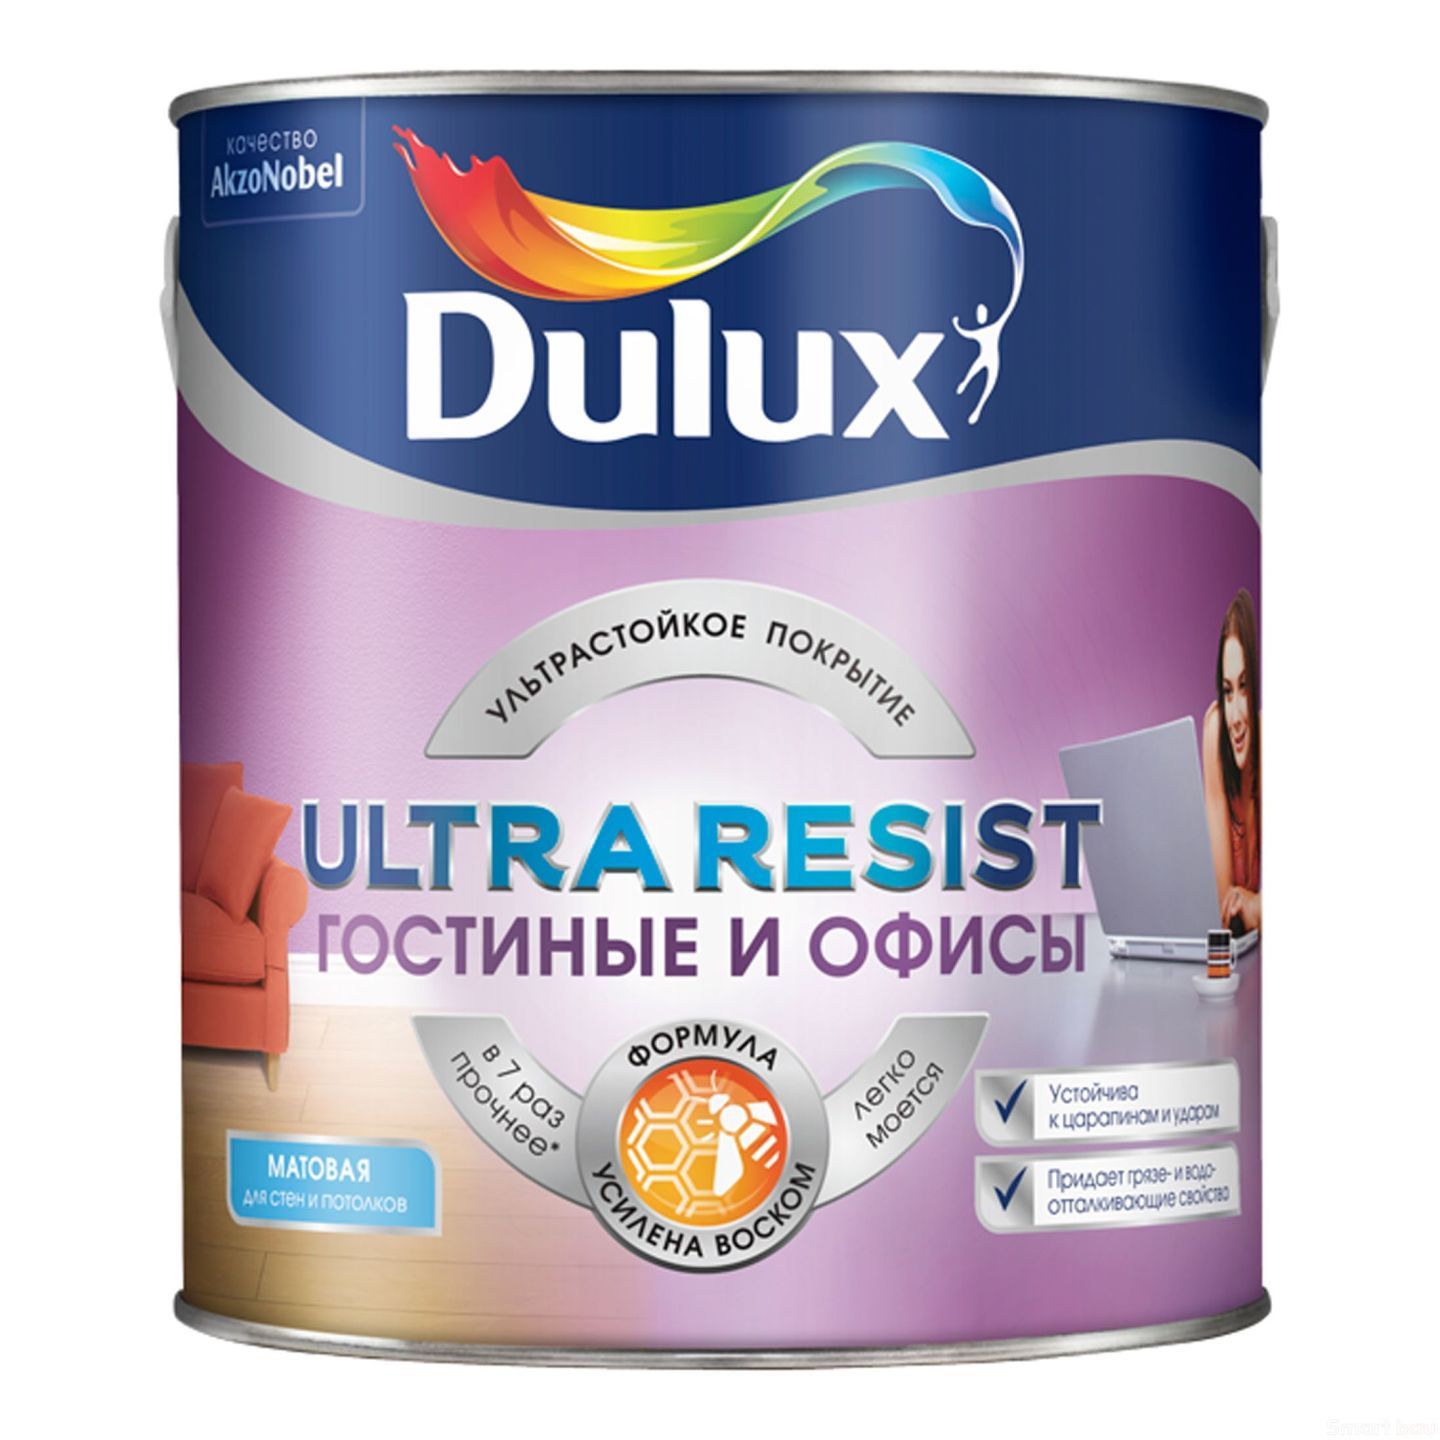 Краска интерьерная, усилена воском, матовая Dulux Ultra Resist Гостиные и офисы фото